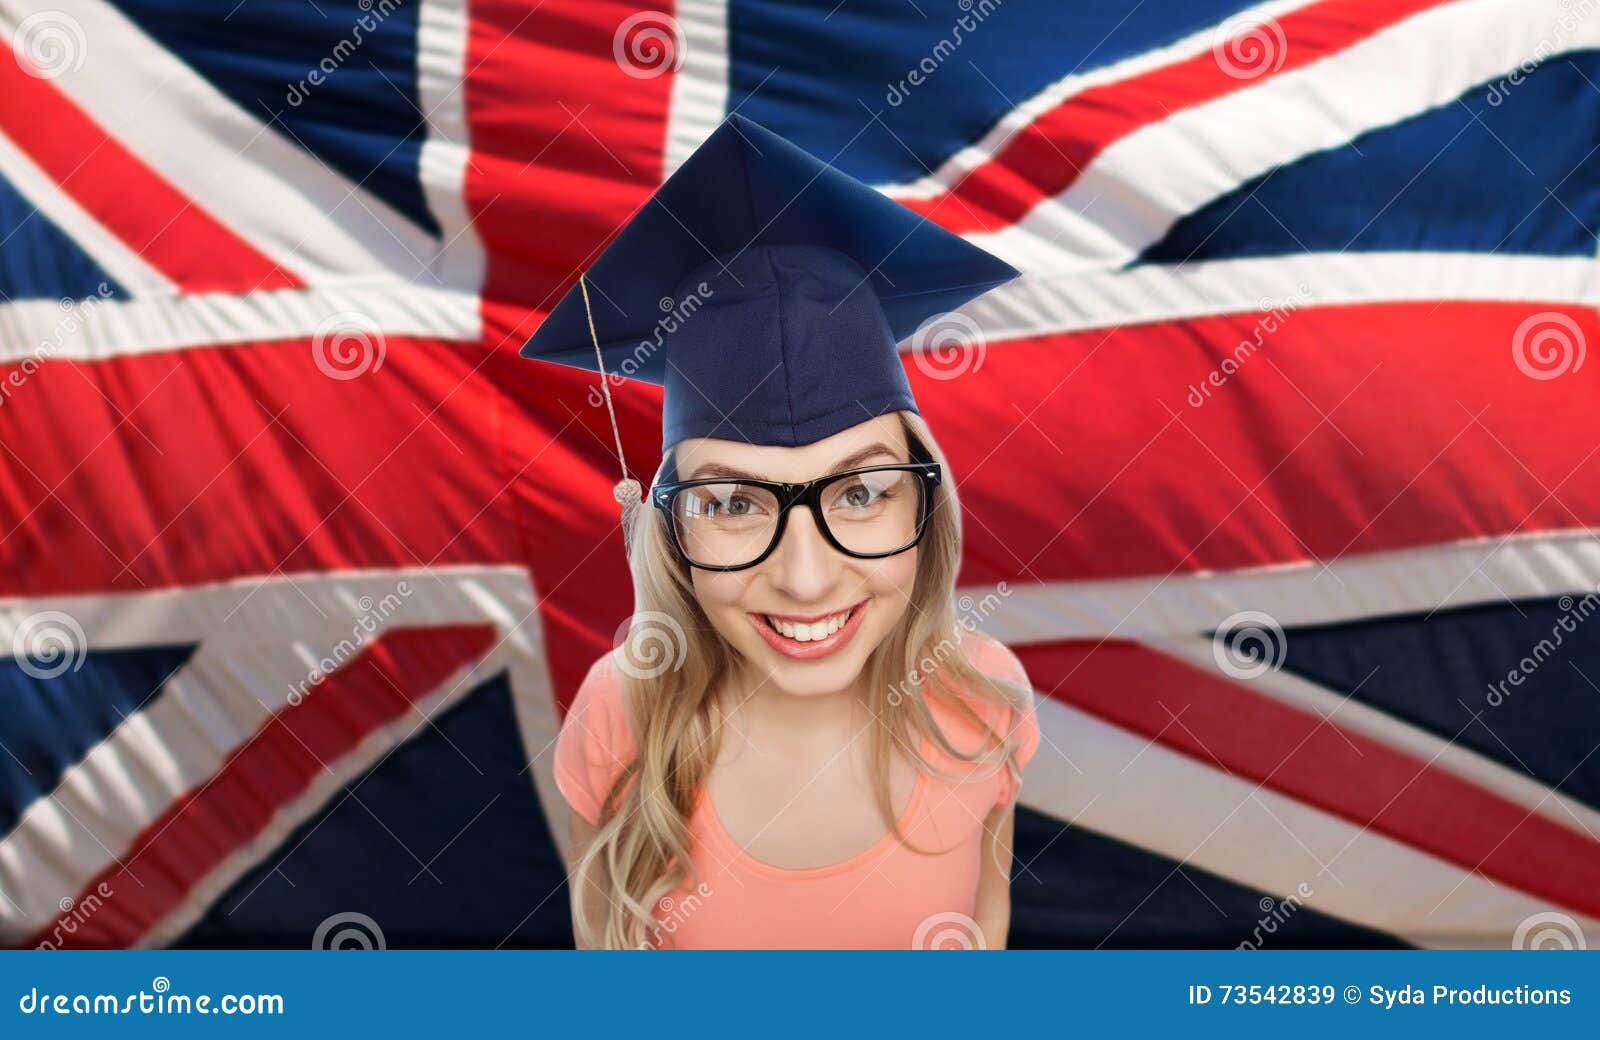 Английский по интервью со звездами. Студенты с английским флагом. Англичане студенты с флагом. Девушка на фоне Британии. Девушка с английским флажком.